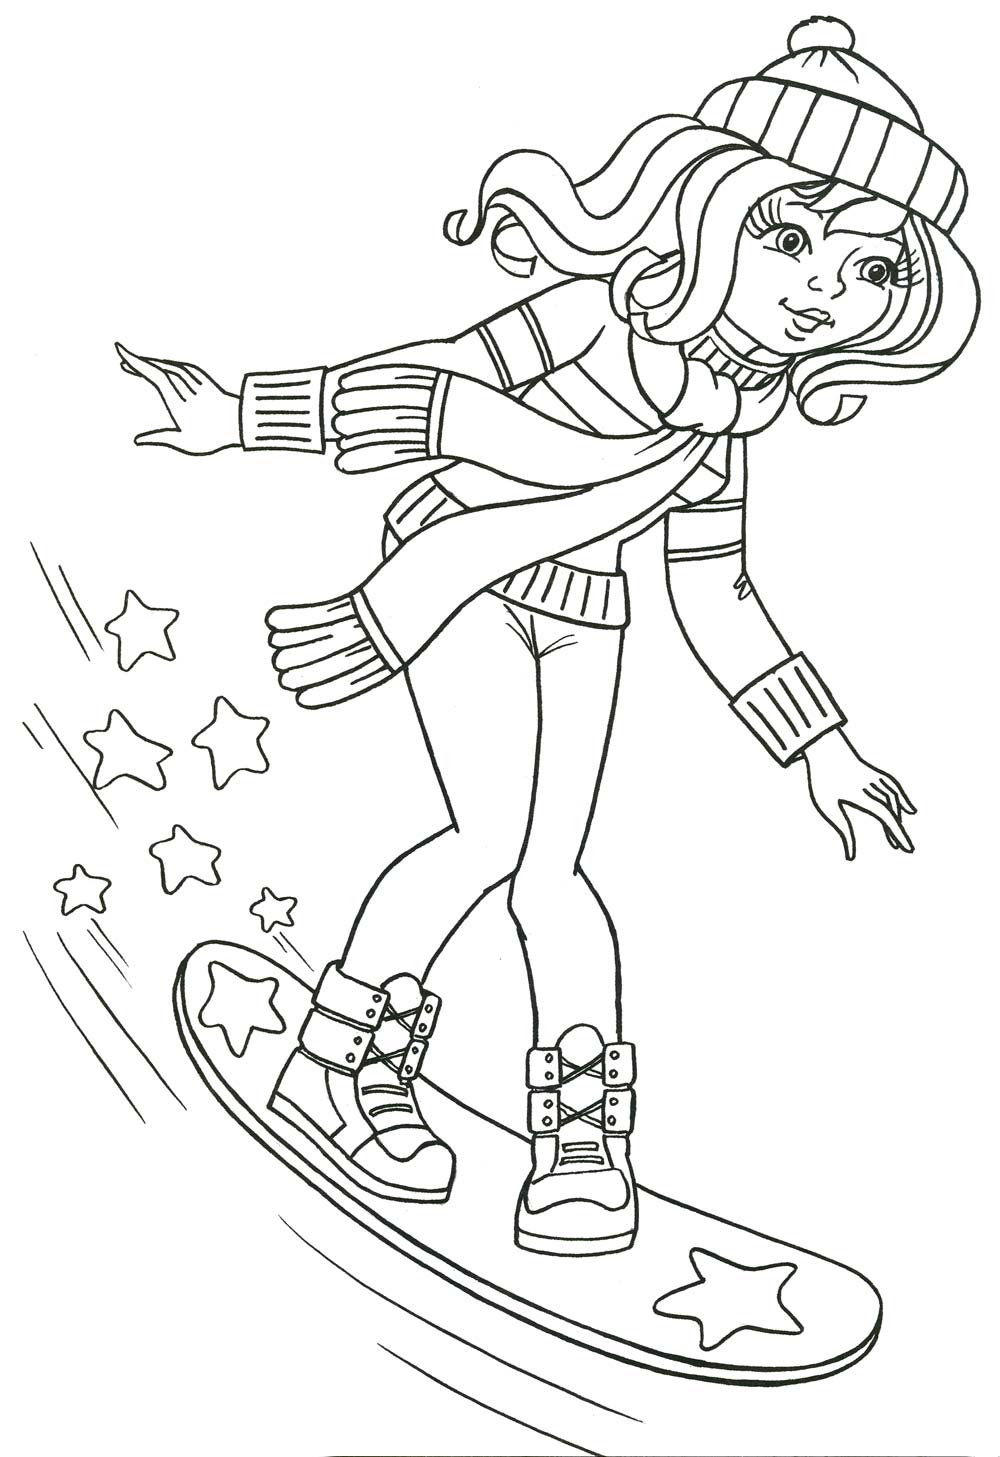  раскраски на тему сноубординг для мальчиков и девочек. Интересные раскраски с зимними видами спорта для детей и взрослых.                   